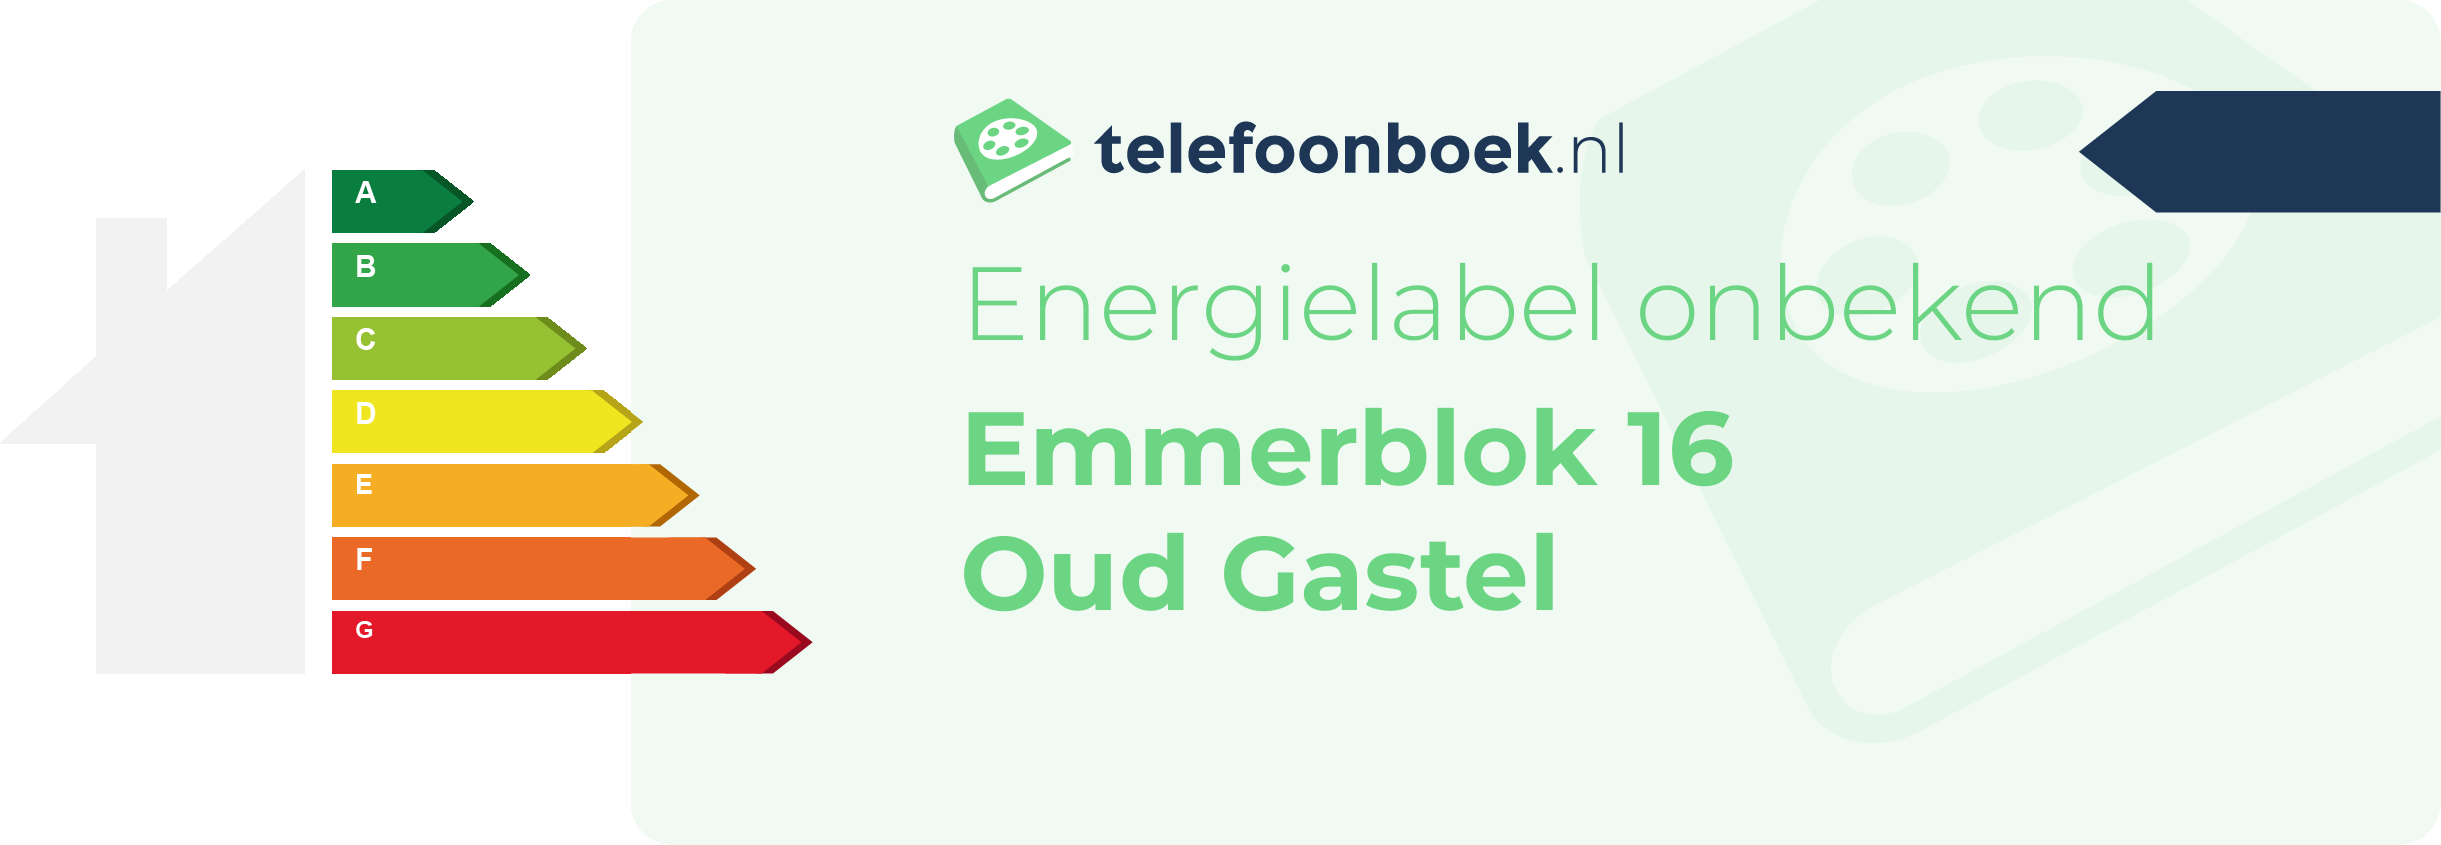 Energielabel Emmerblok 16 Oud Gastel